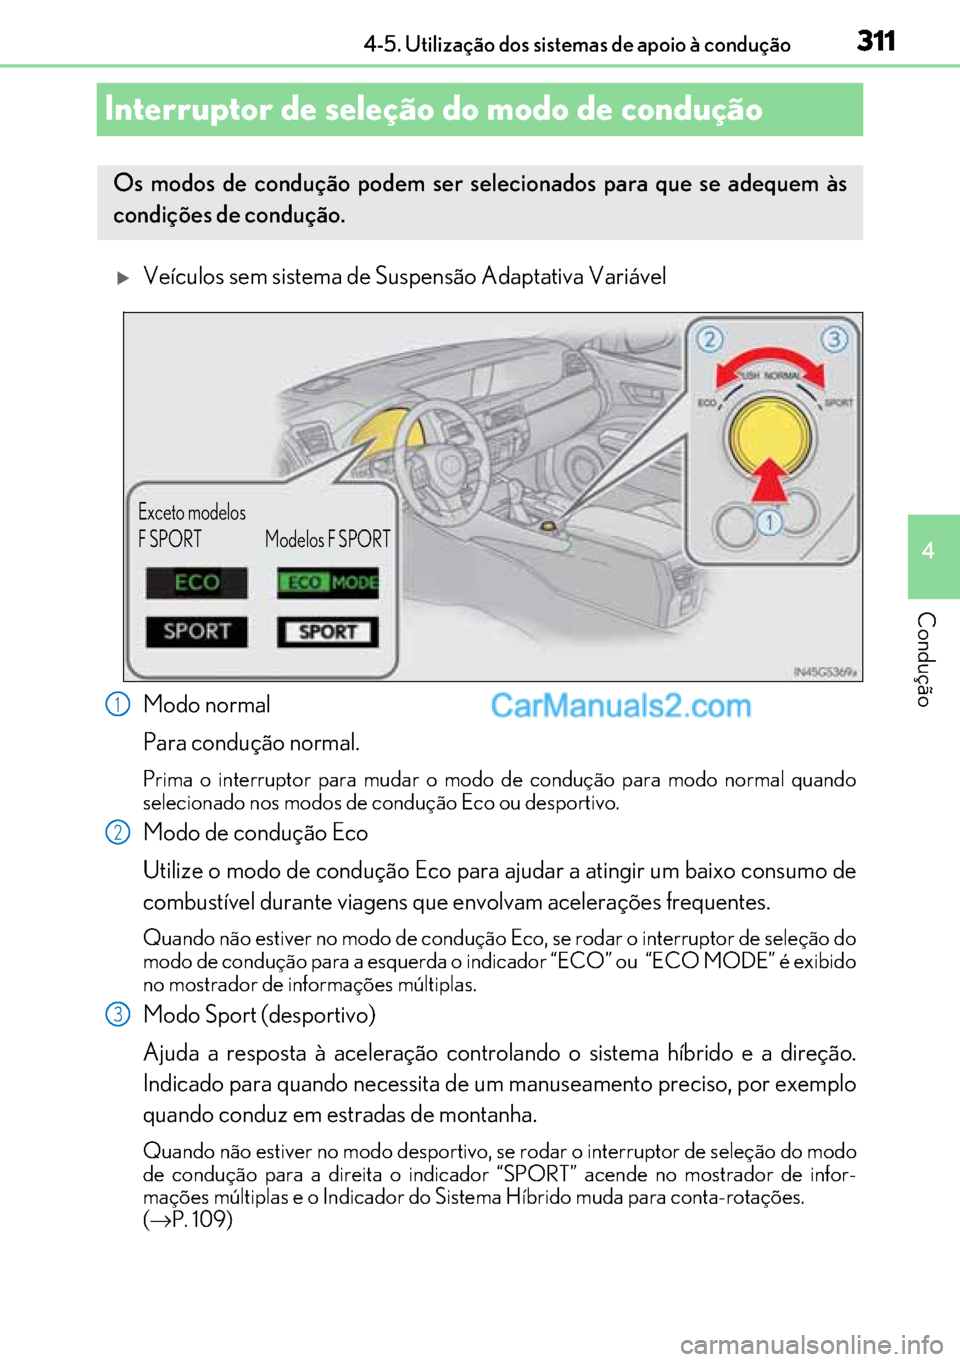 Lexus GS300h 2017  Manual do proprietário (in Portuguese) 311
311311 311
4 4-5. Utilização dos sistemas de apoio à condução
Condução
Interruptor de seleção do modo de condução
�XVeículos sem sistema de Suspensão Adaptativa Variável
Modo normal
